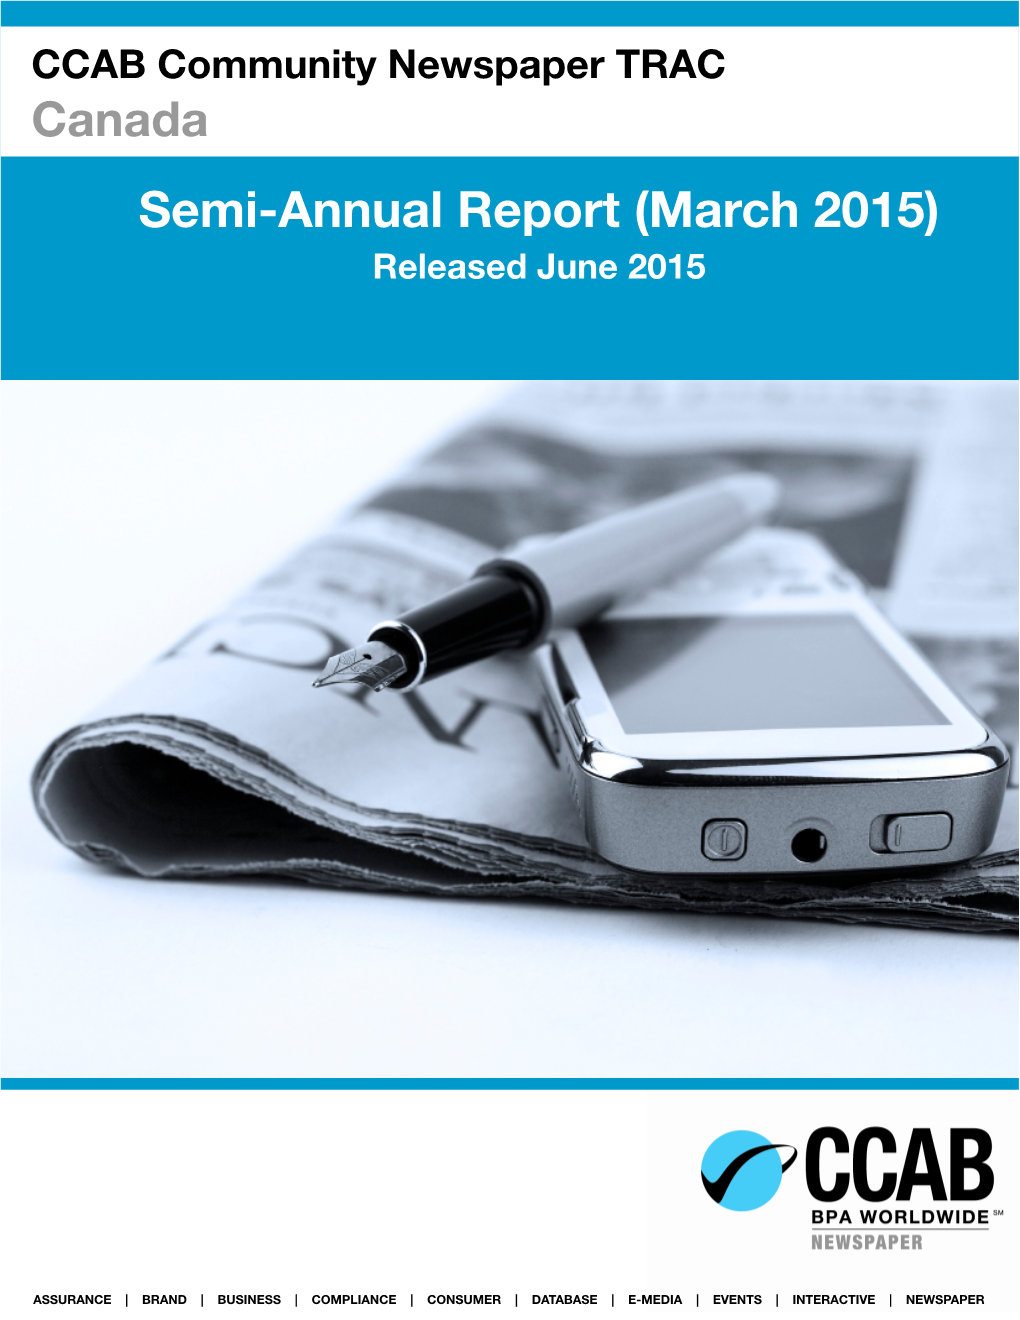 Semi-Annual Report (March 2015) Released June 2015